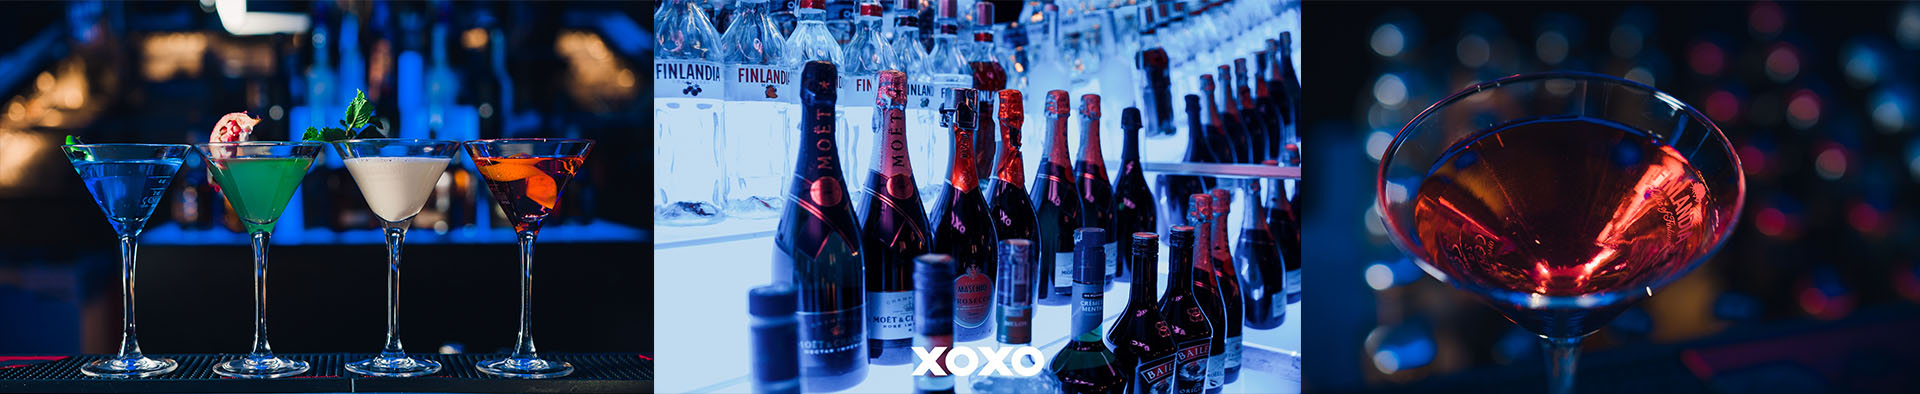 XOXO: Eventy firmowe na najwyższym poziomie